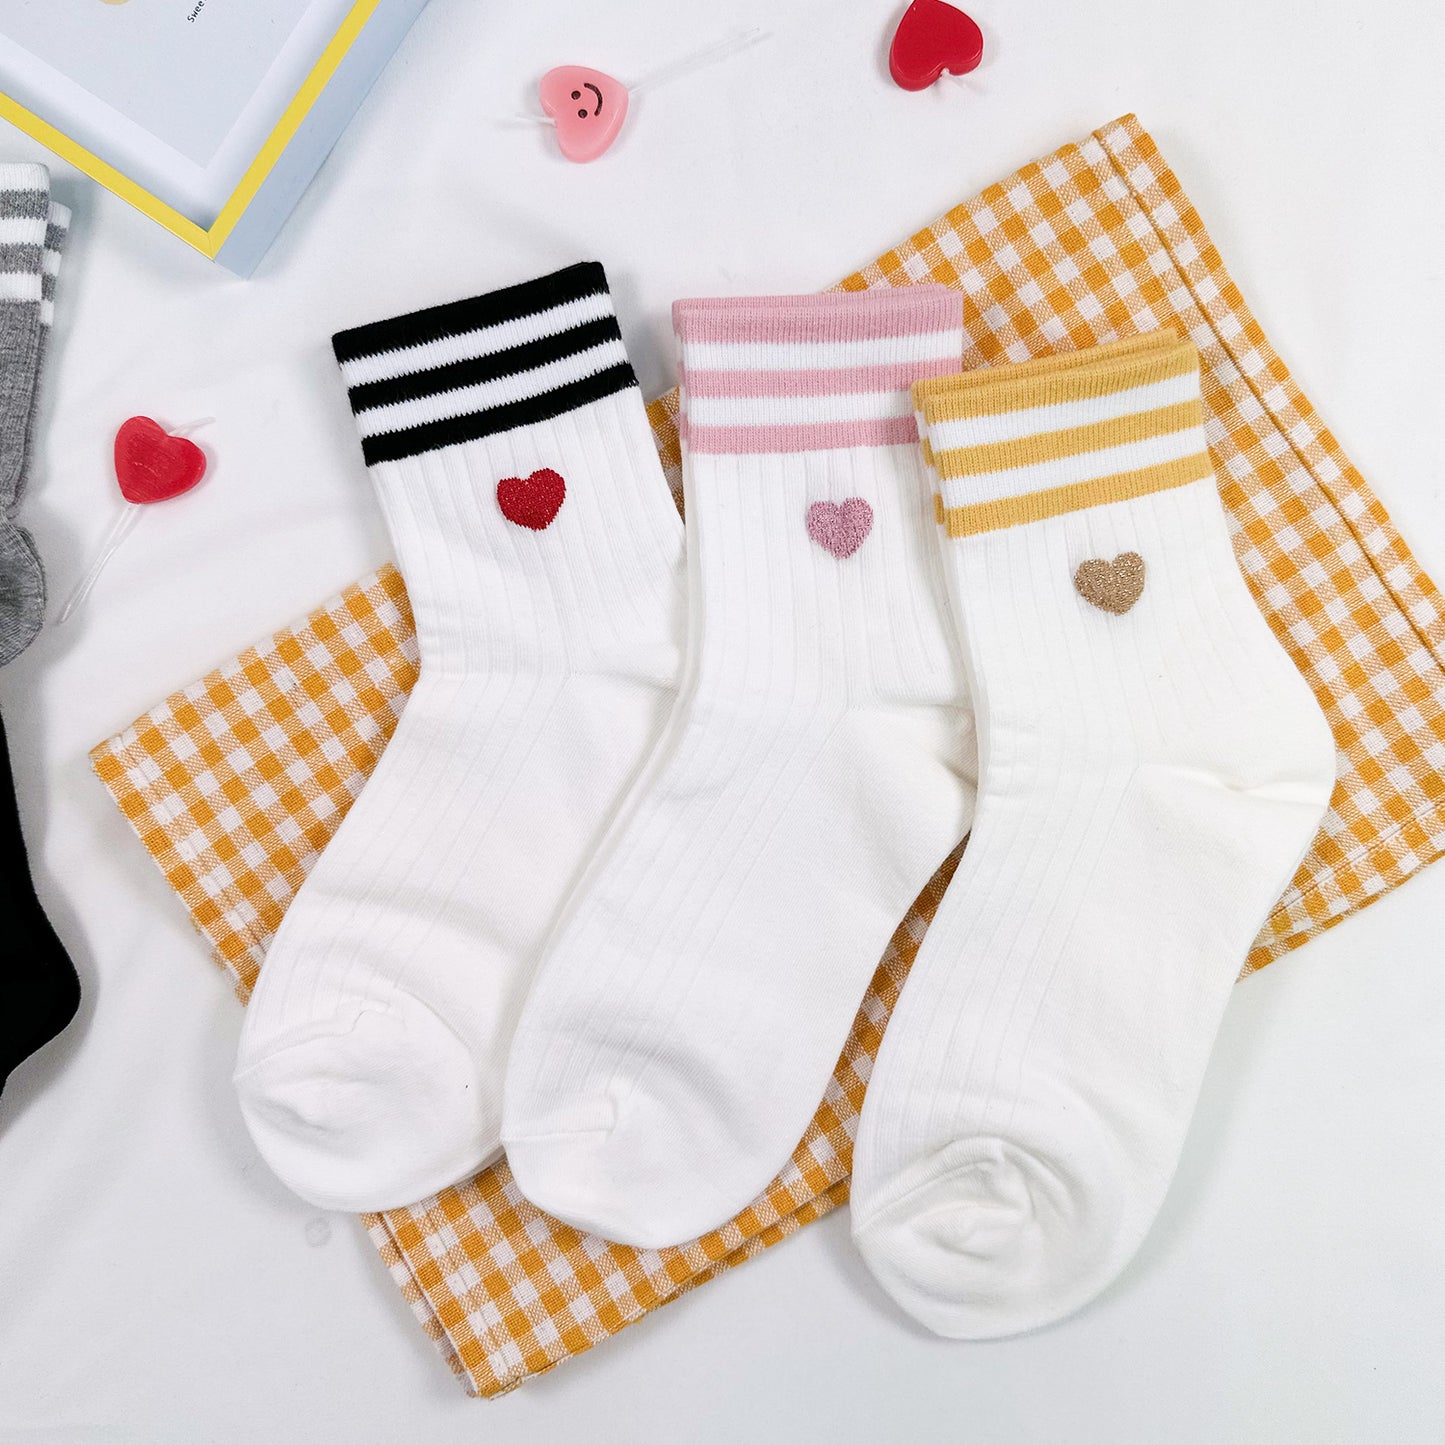 Women's Crew Heart Palette Socks